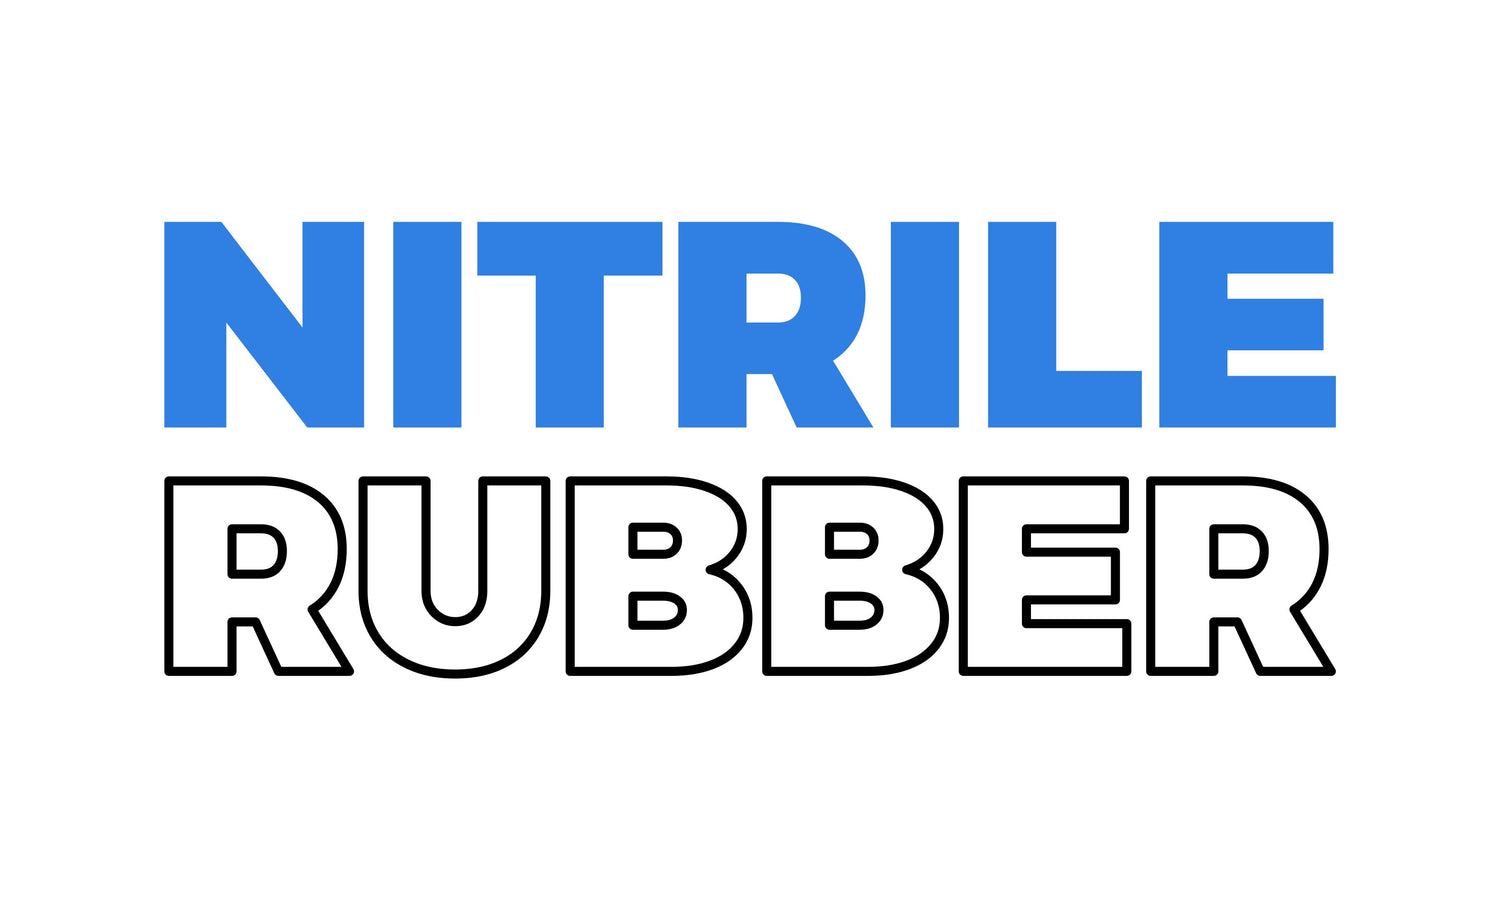 Nitrile - Rubber